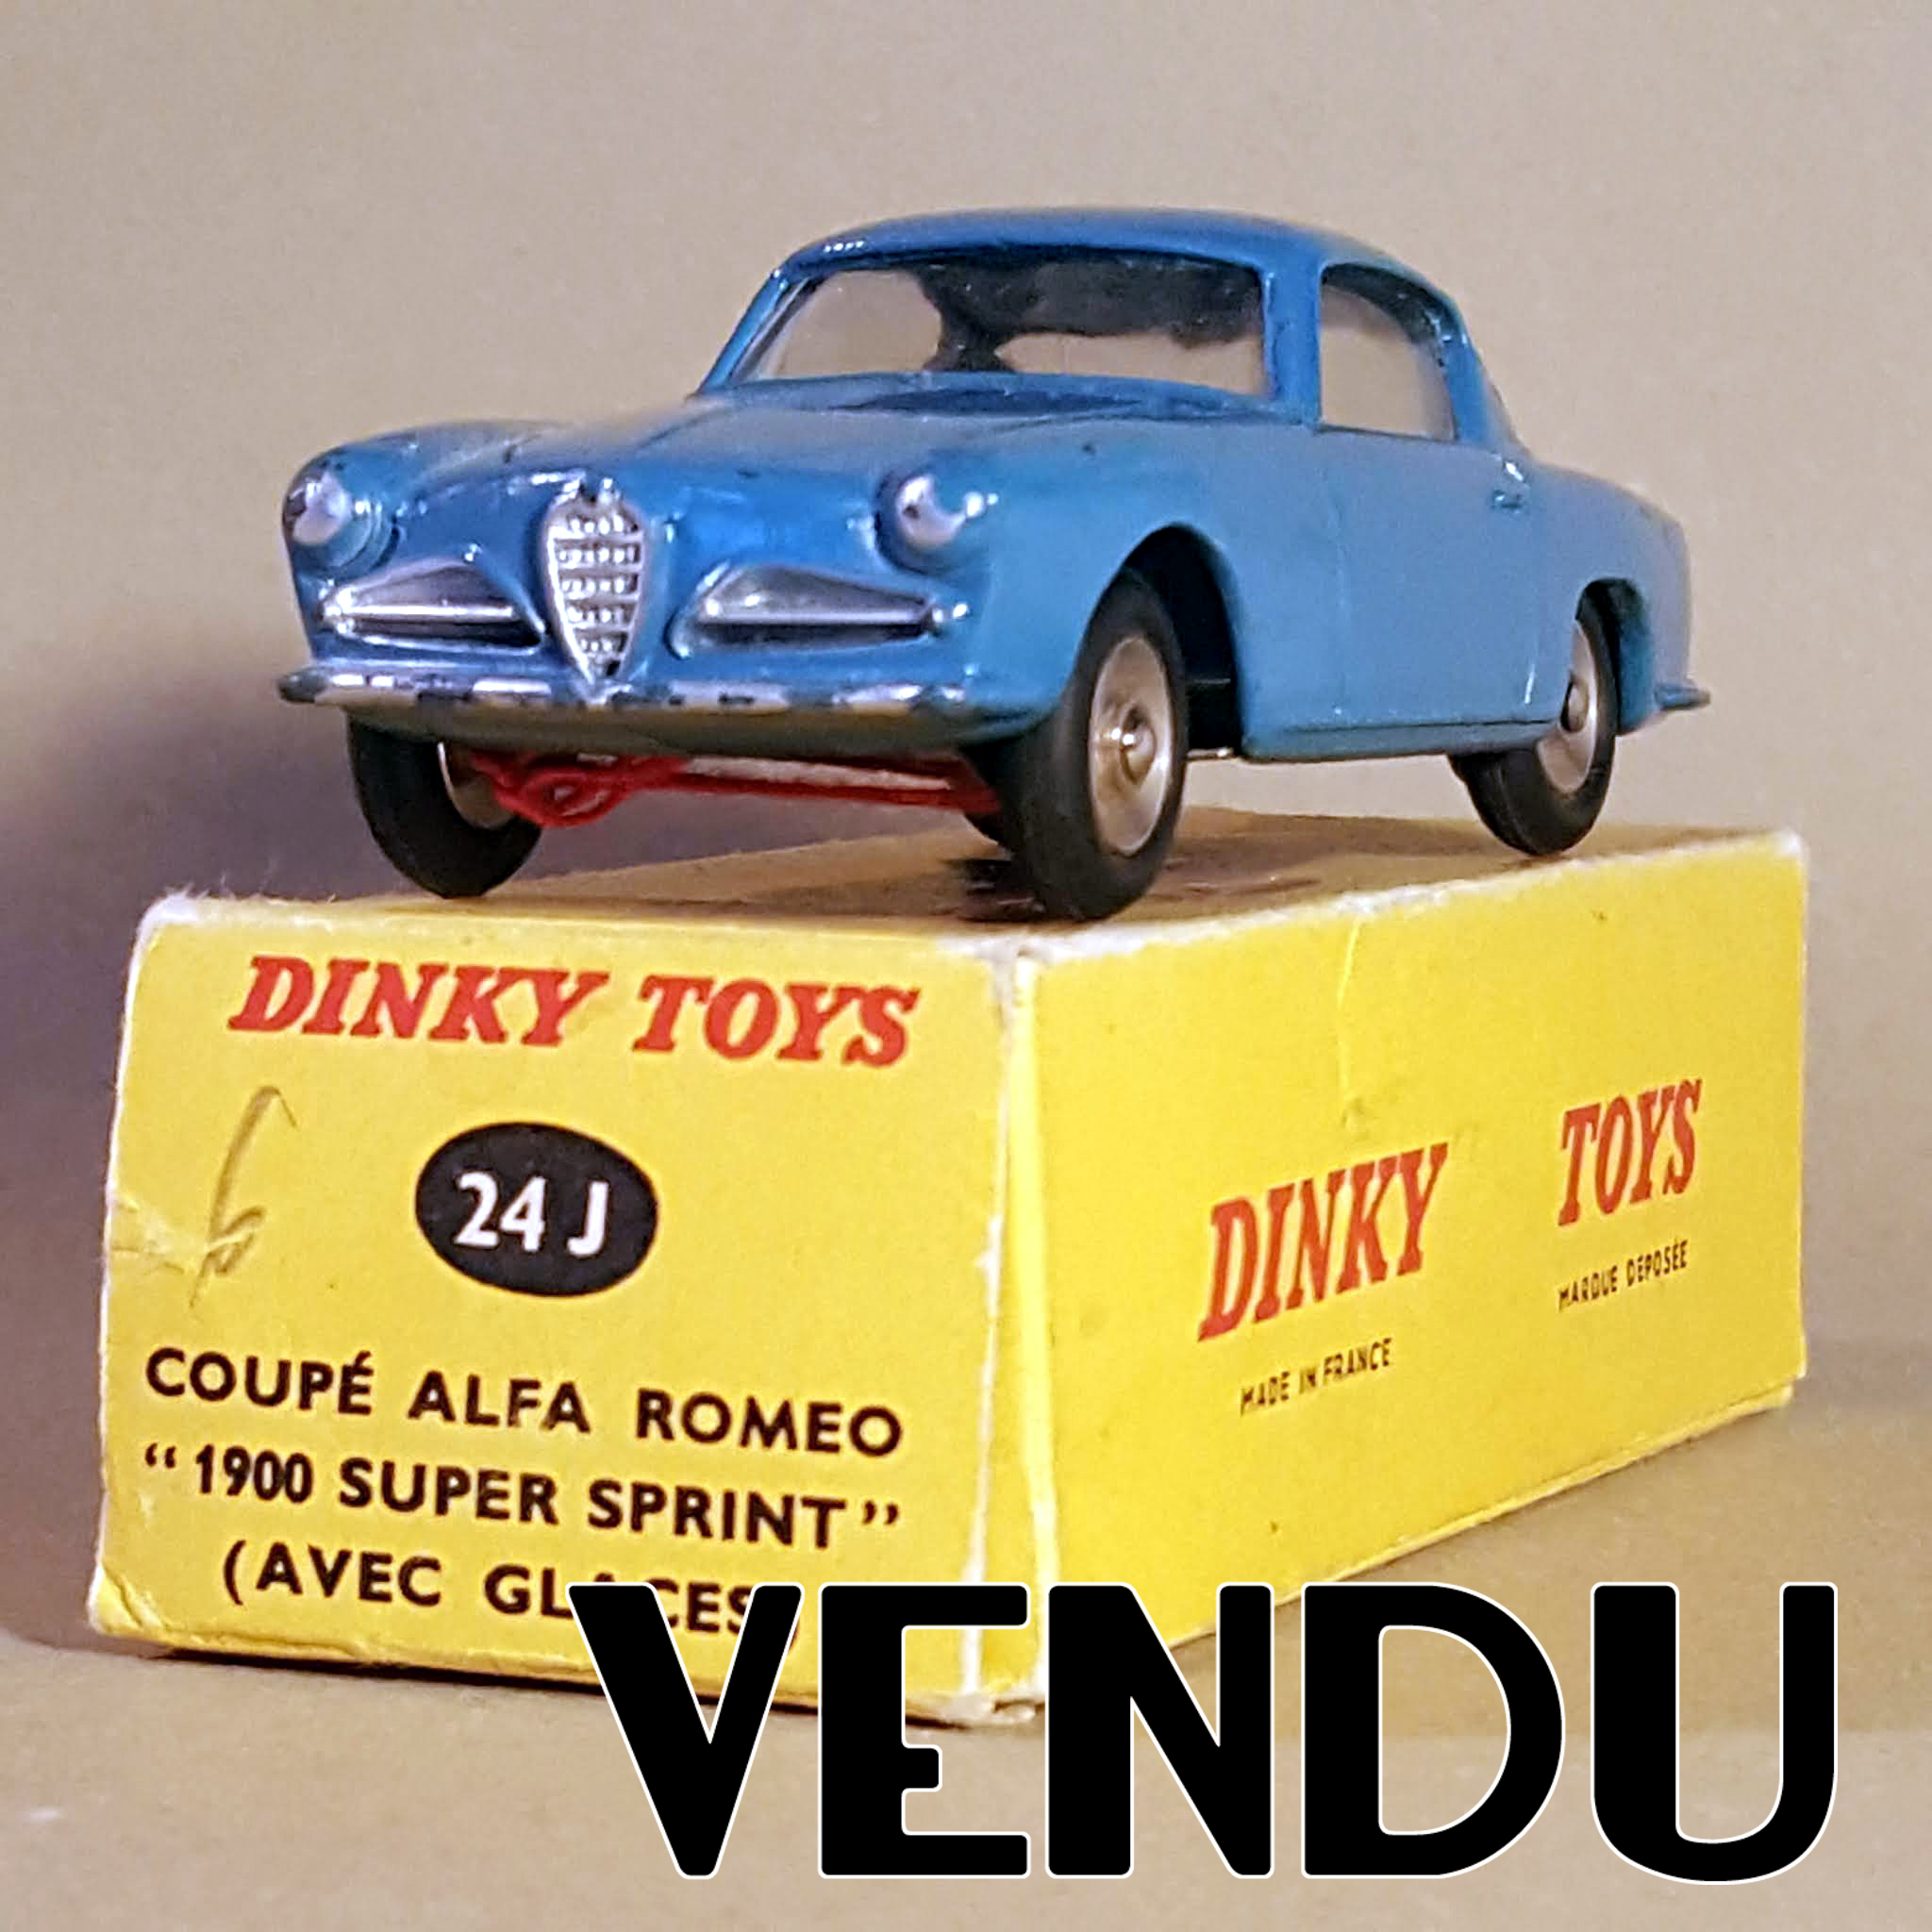 AU JOUET PARISIEN: Dinky Toys France 24J 527 Alfa Romeo 1900 Super